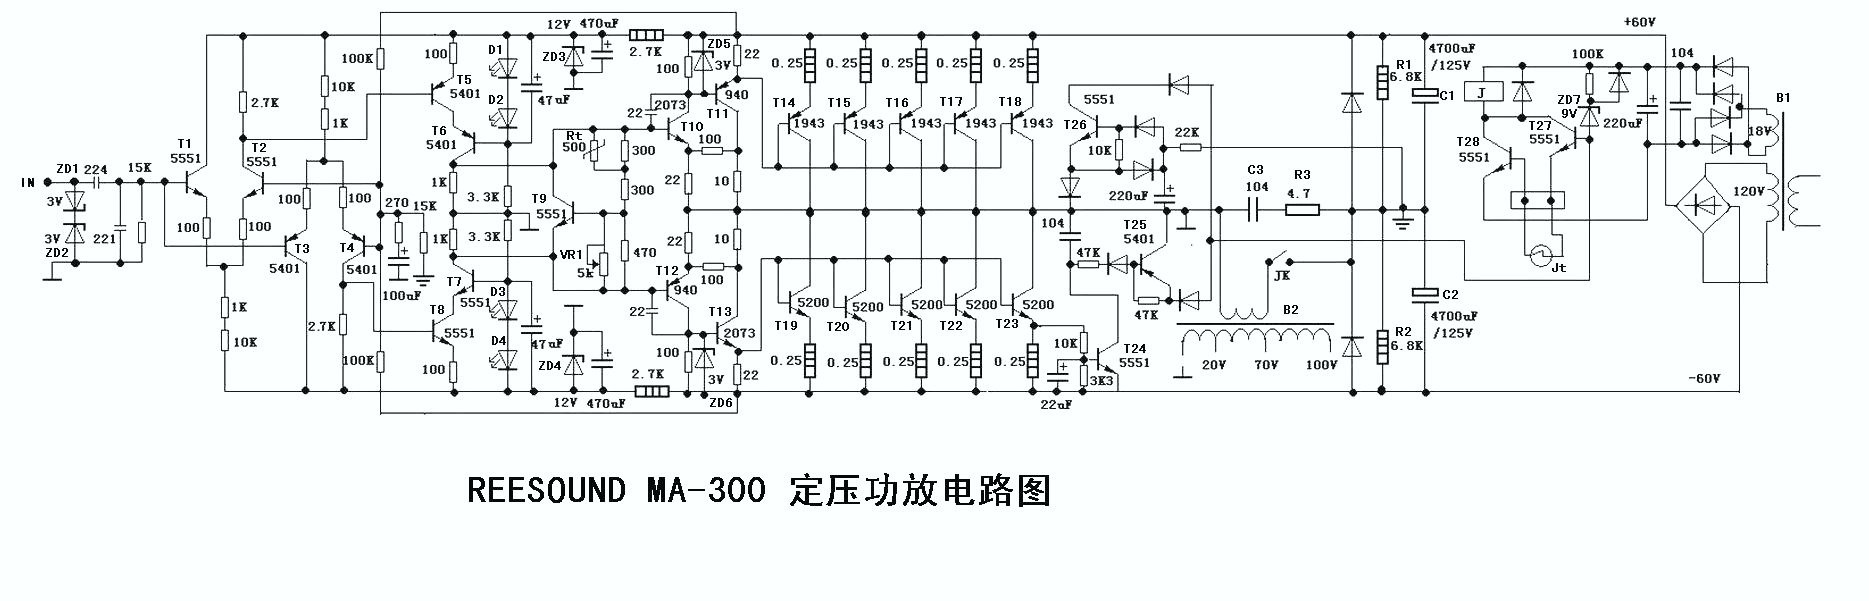 Scherpe geluid van constante druk REESOUND MA-300 eindversterker schema